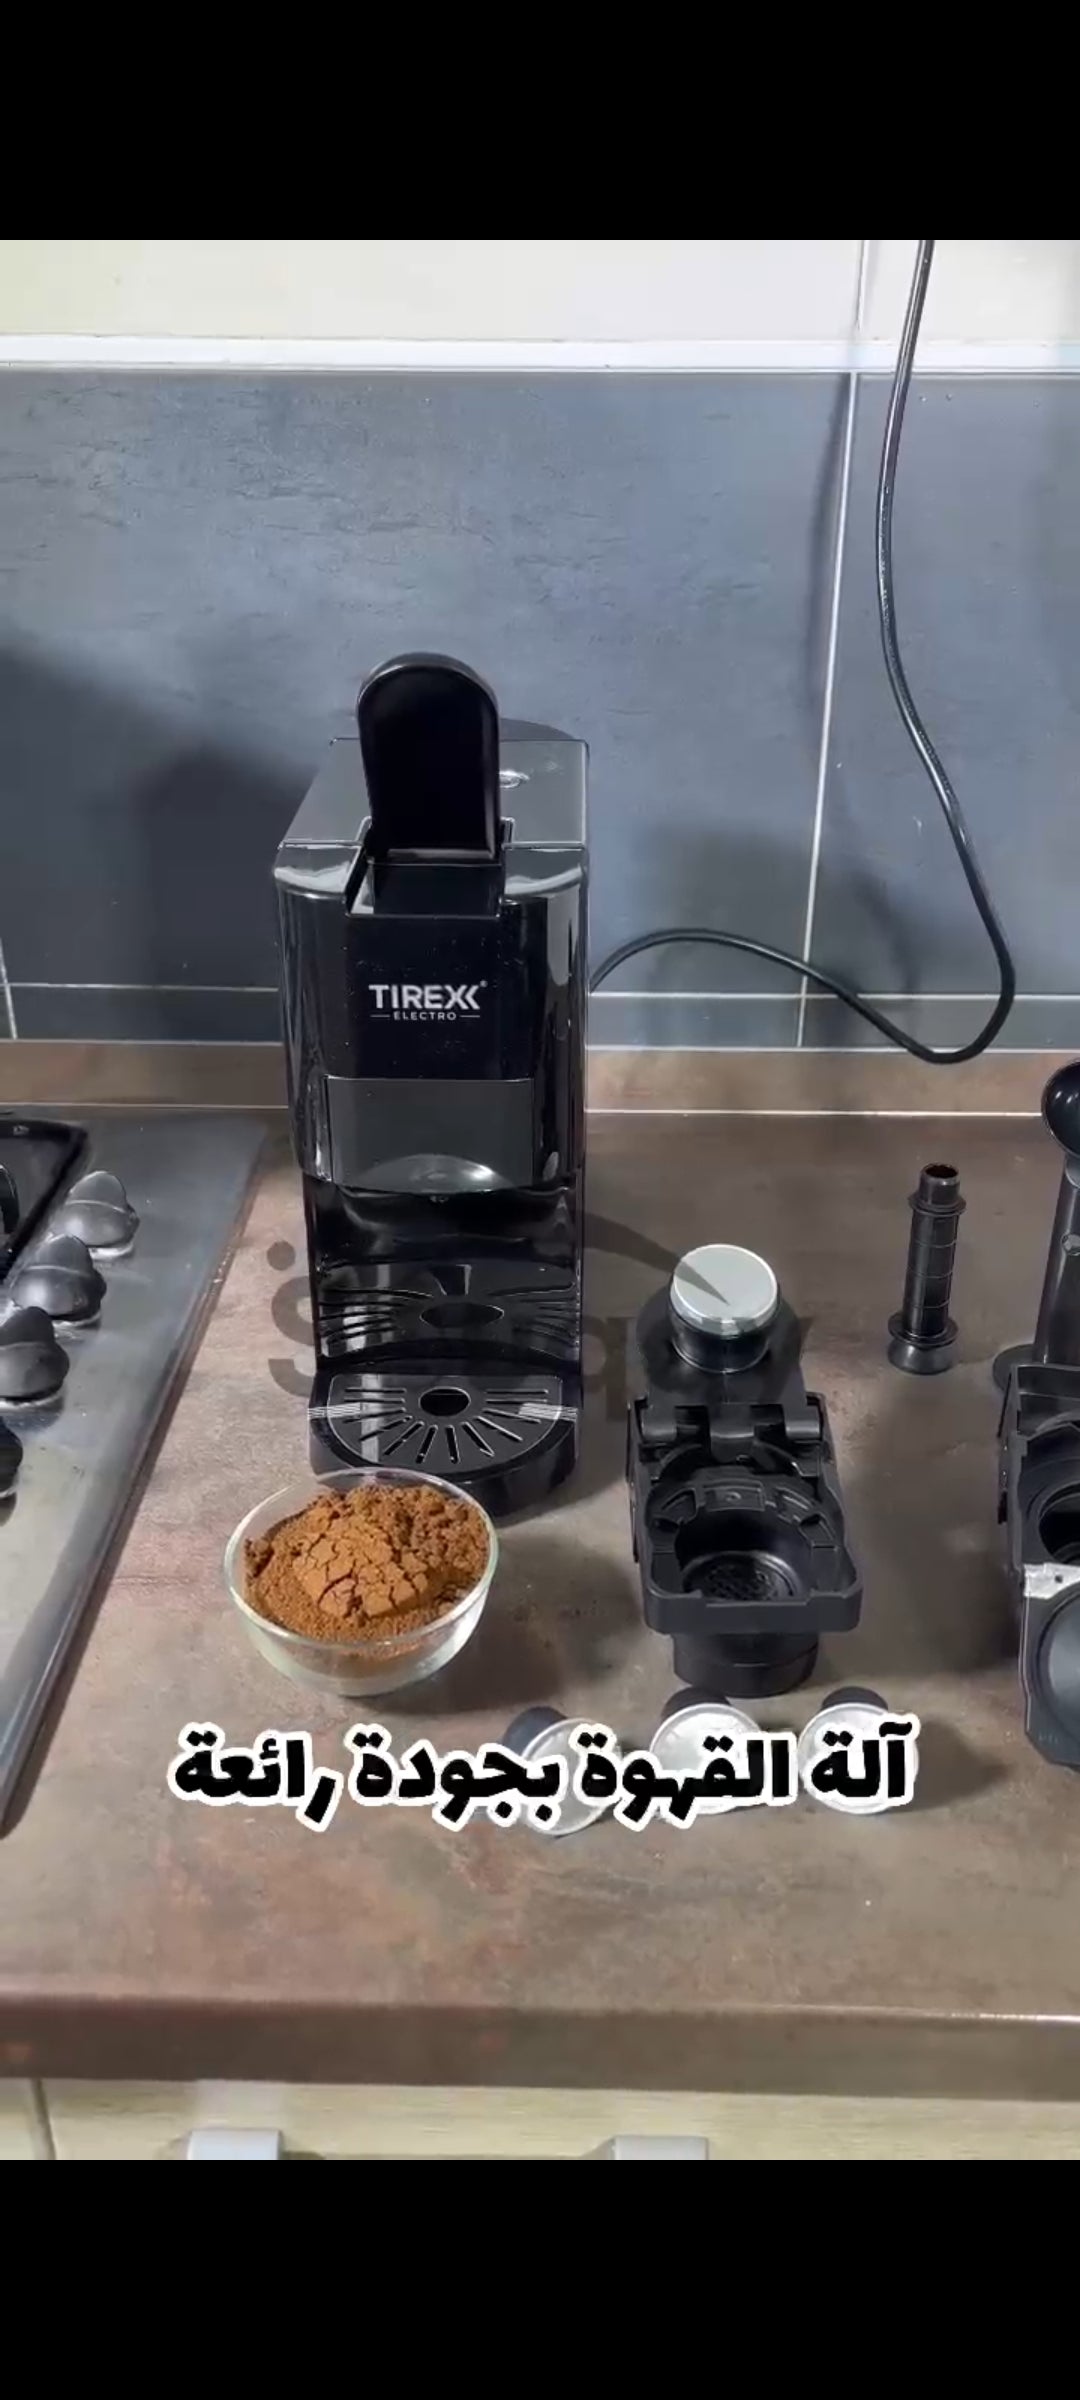 Machine a cafe Tirex 4 EN 1  Nespresso  / Dolce Gusto /  Poudre / Lavazza